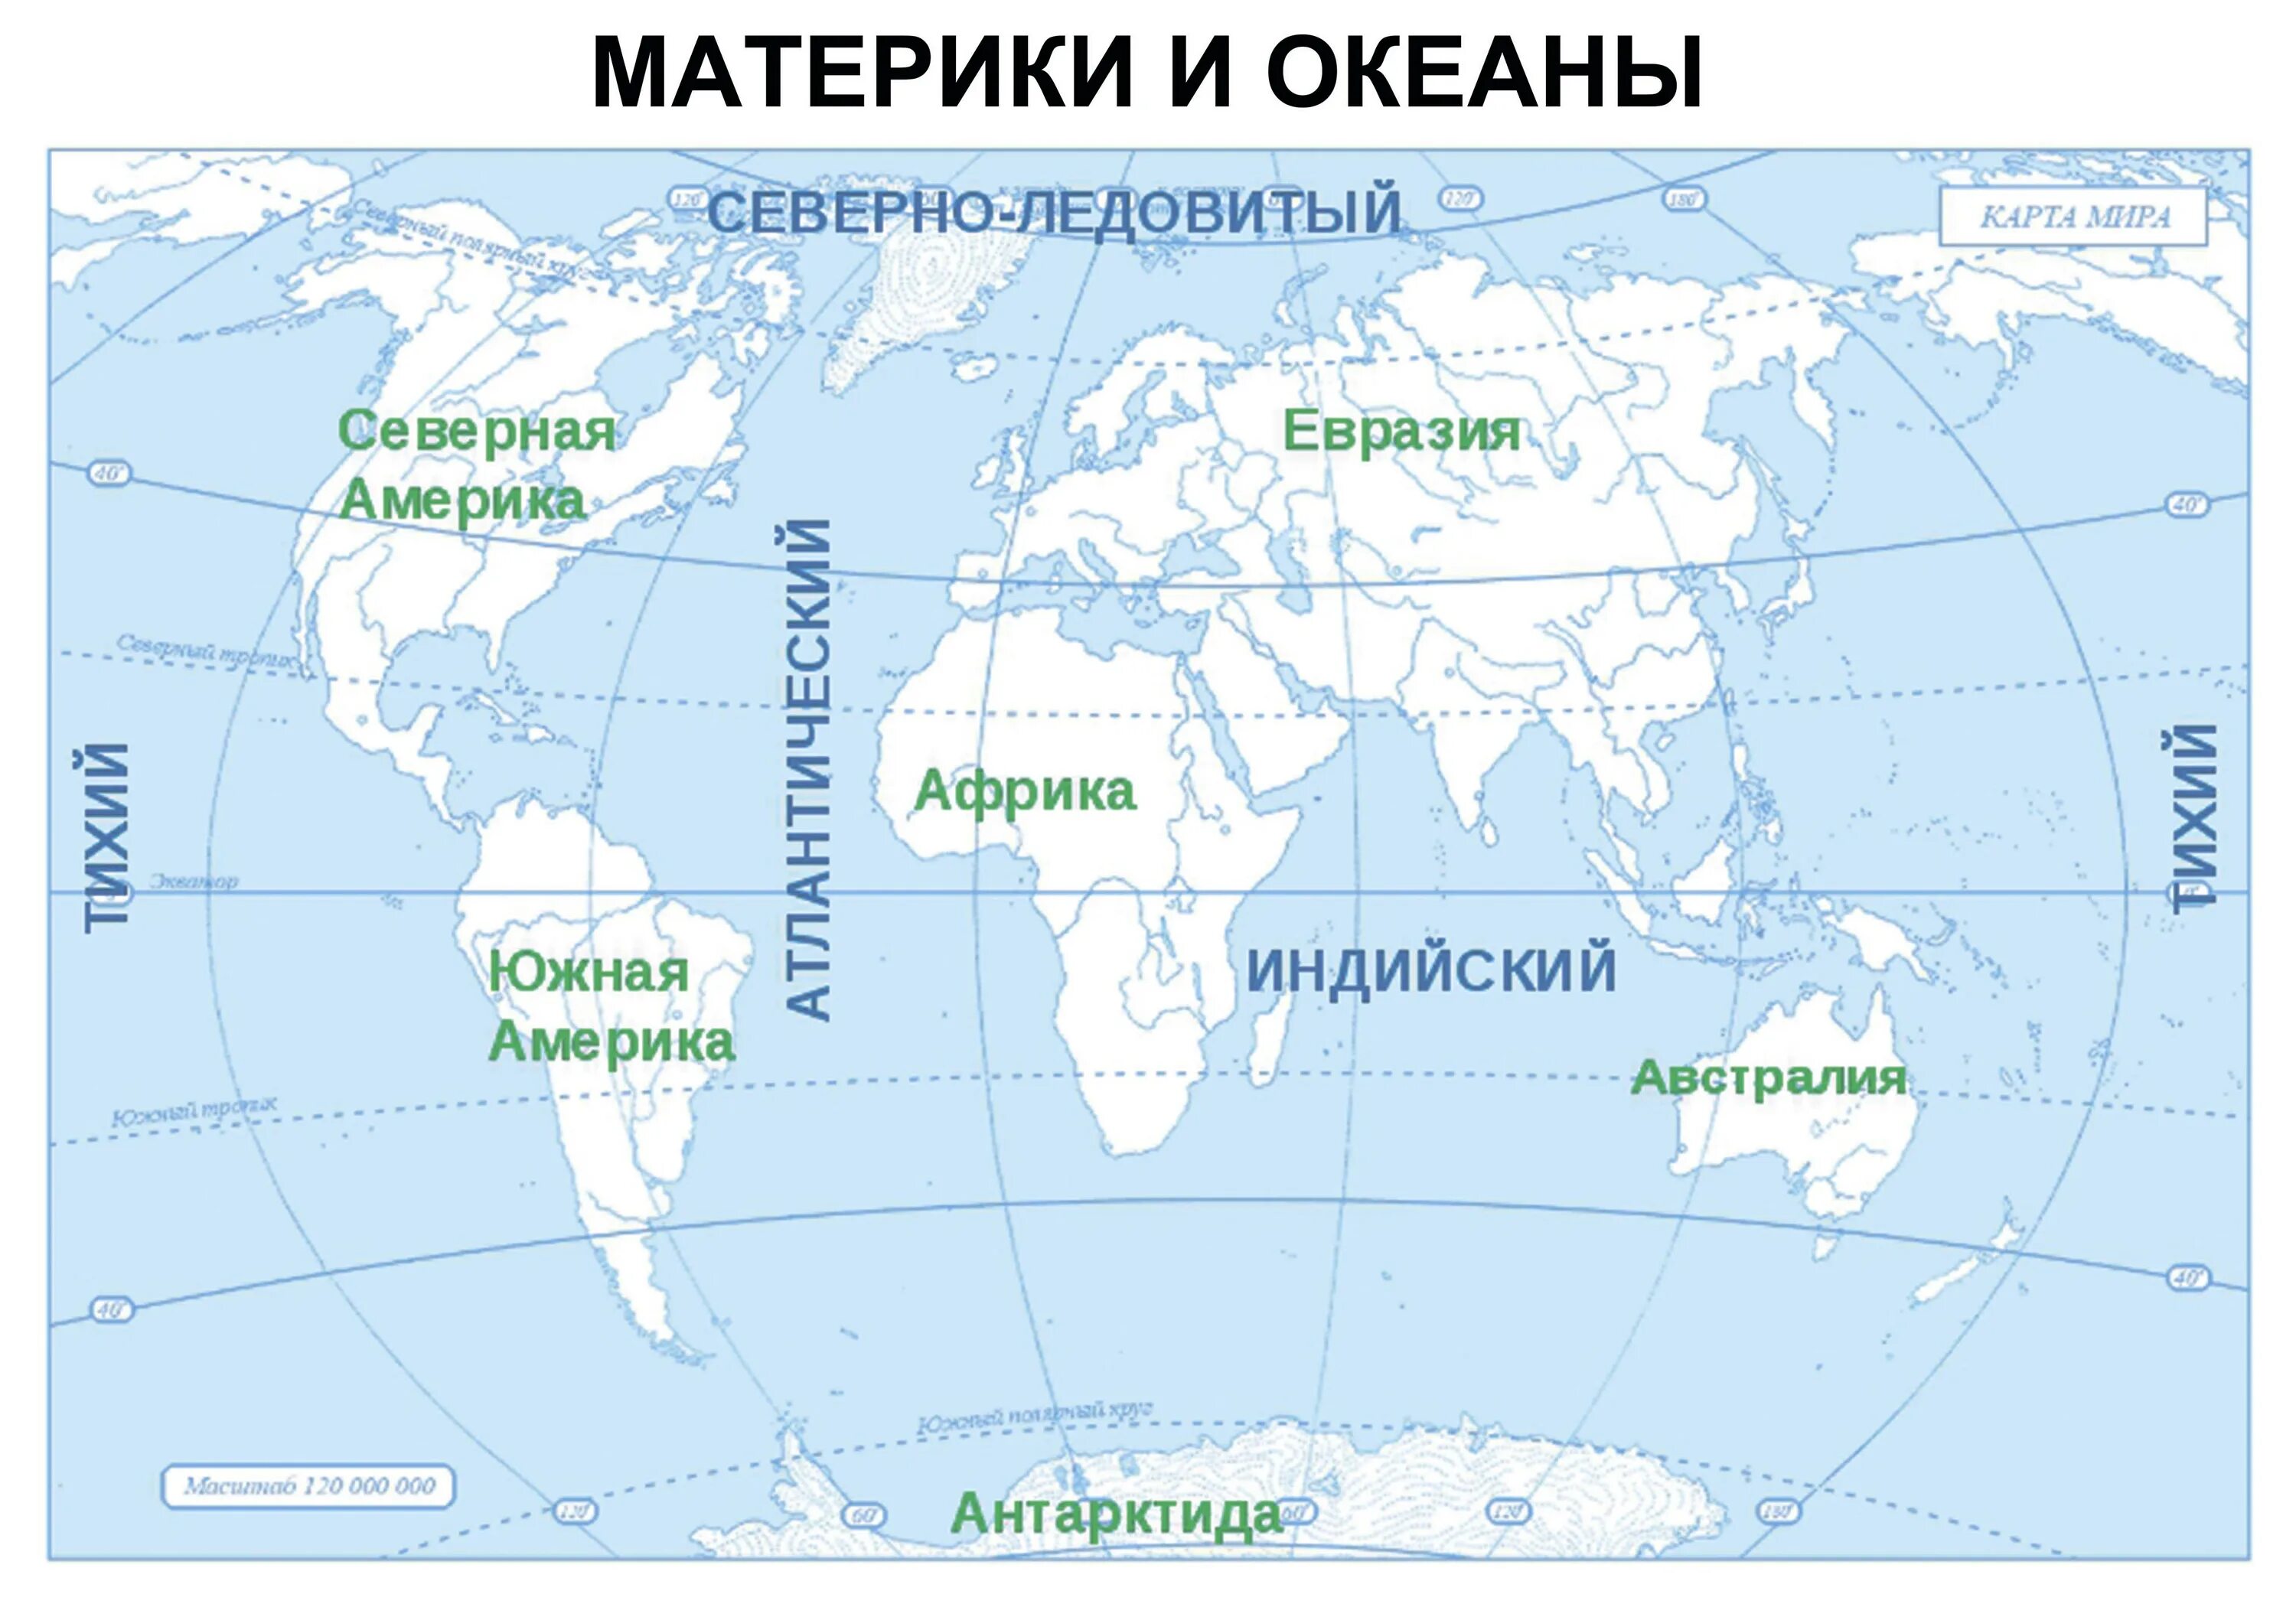 Все океаны 1 словом. Карта где подписаны материки и океаны. Подписать материки и океаны на контурной карте. Подписать материки на контурной карте 6 класс география.